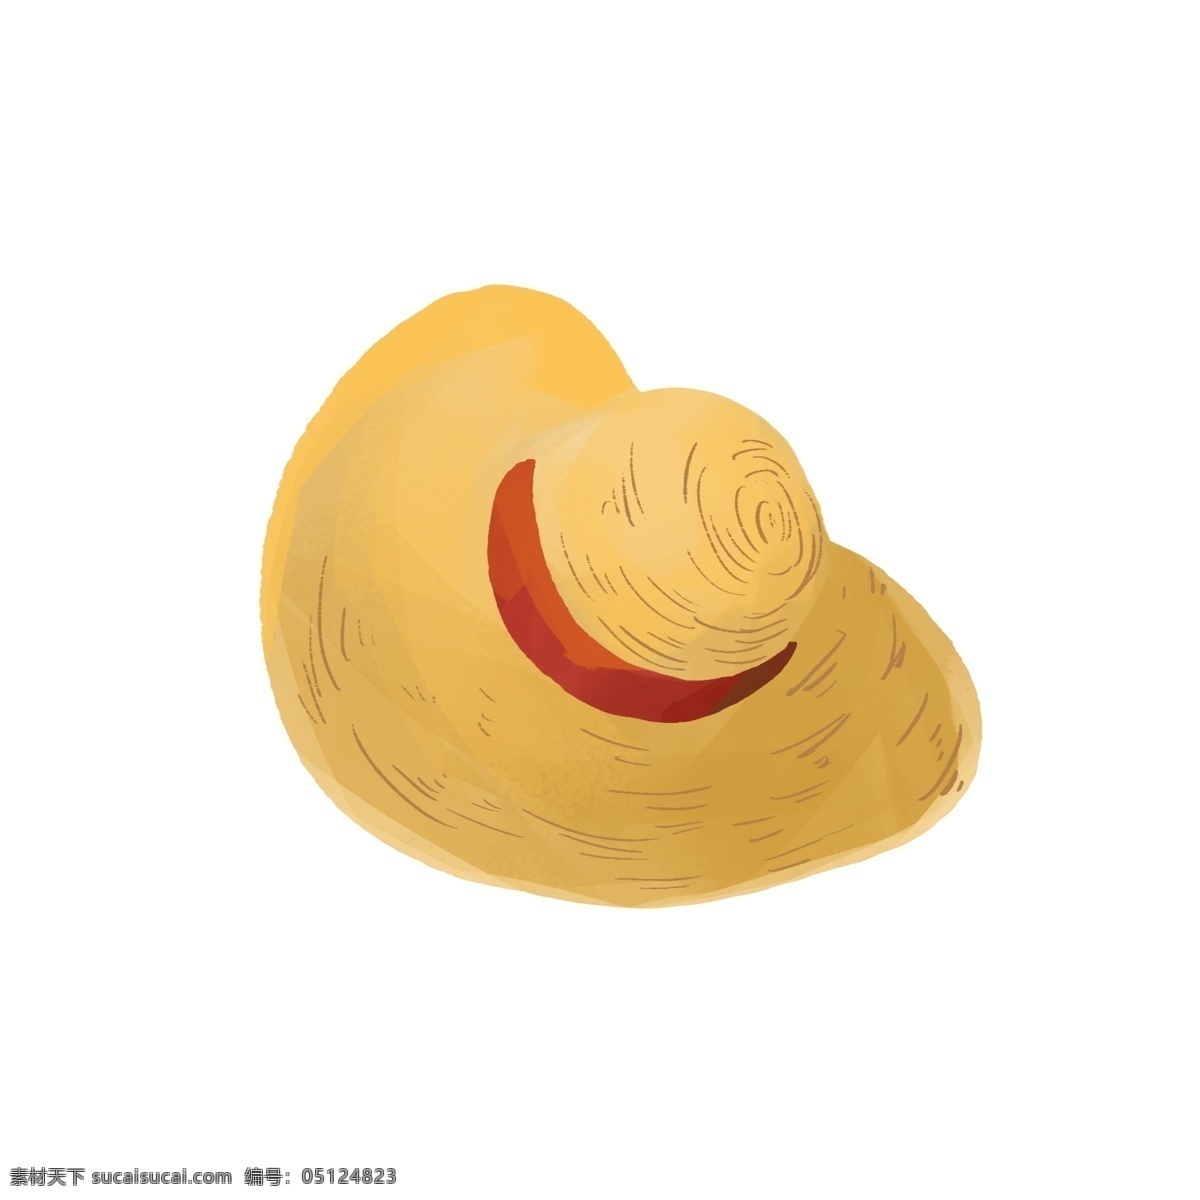 夏日 季节 度假 草帽 遮阳帽 度假帽子 宽檐帽 法式帽 草编帽 红色 黄色 金色 驼色 海报 插画